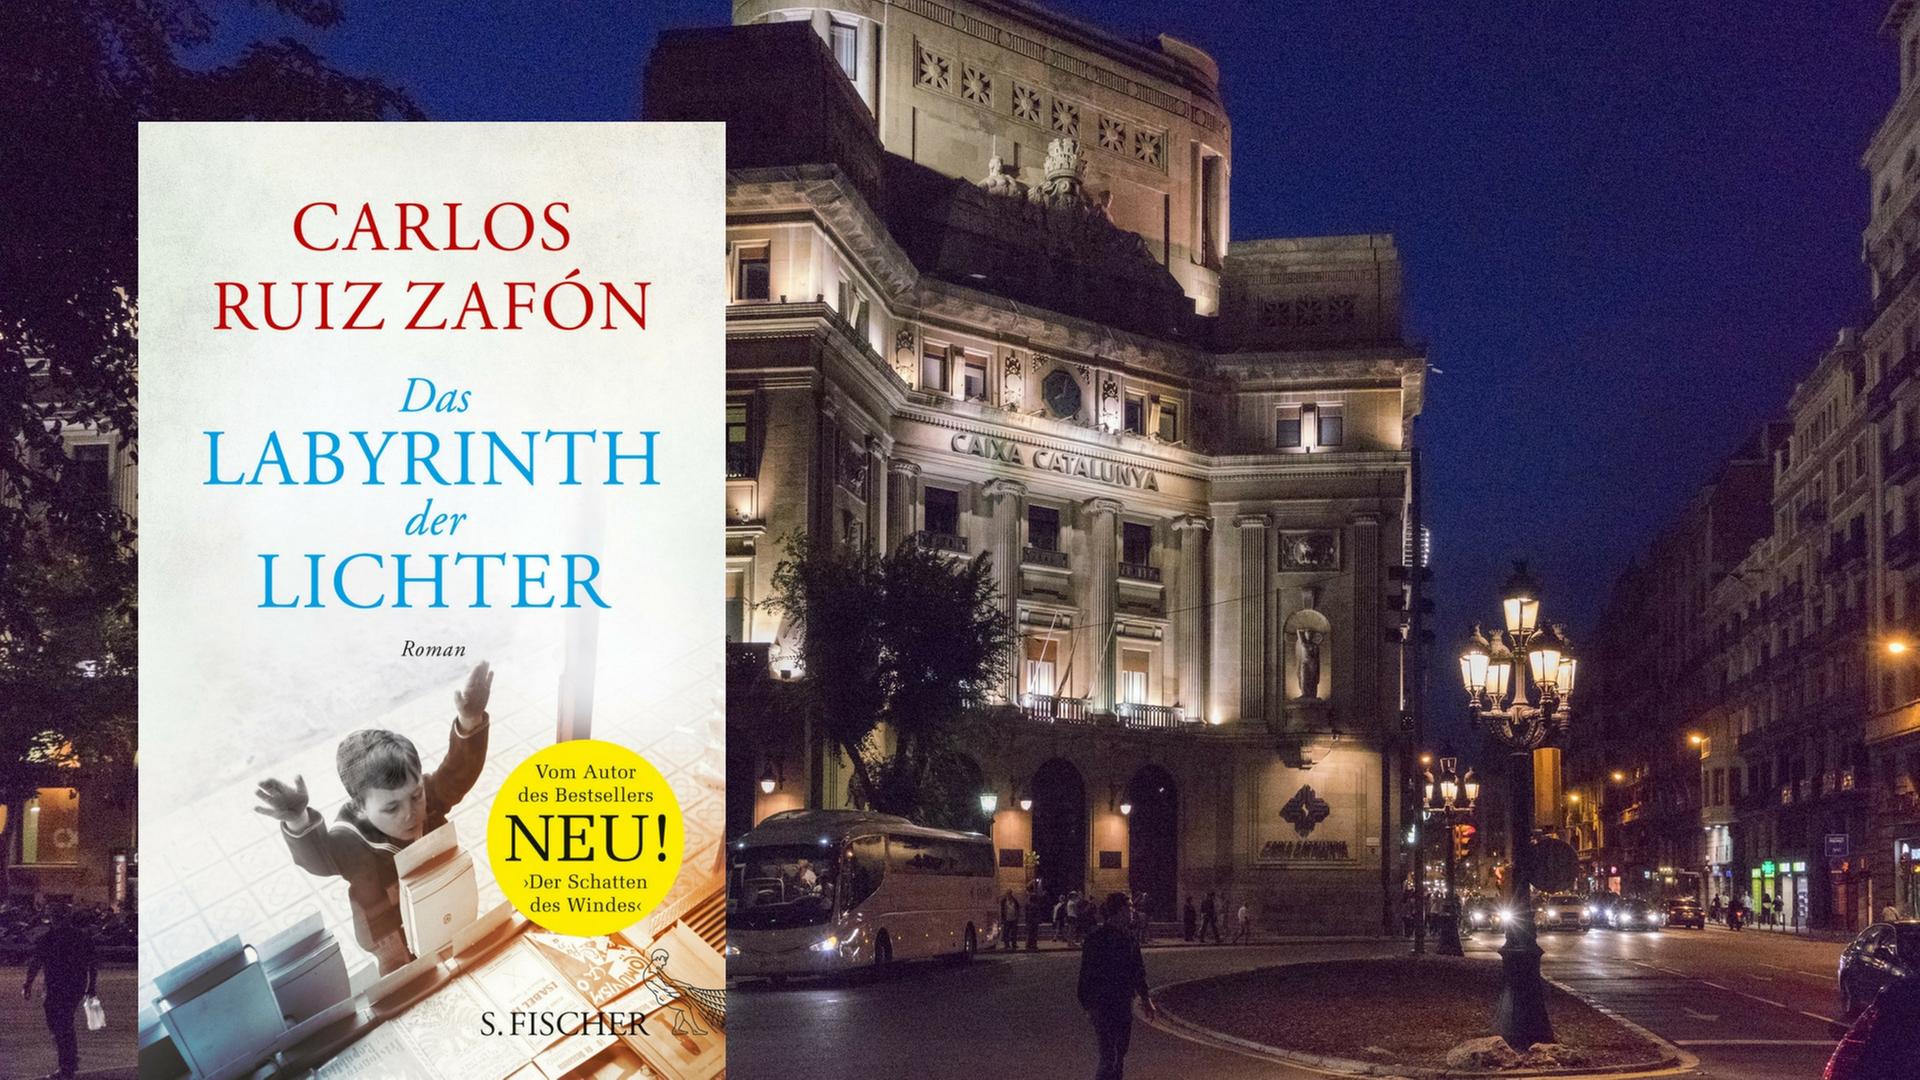 Buchcover Carlos Ruíz Zafón: "Das Labyrinth der Lichter" vor einer Nachtansicht von Barcelona